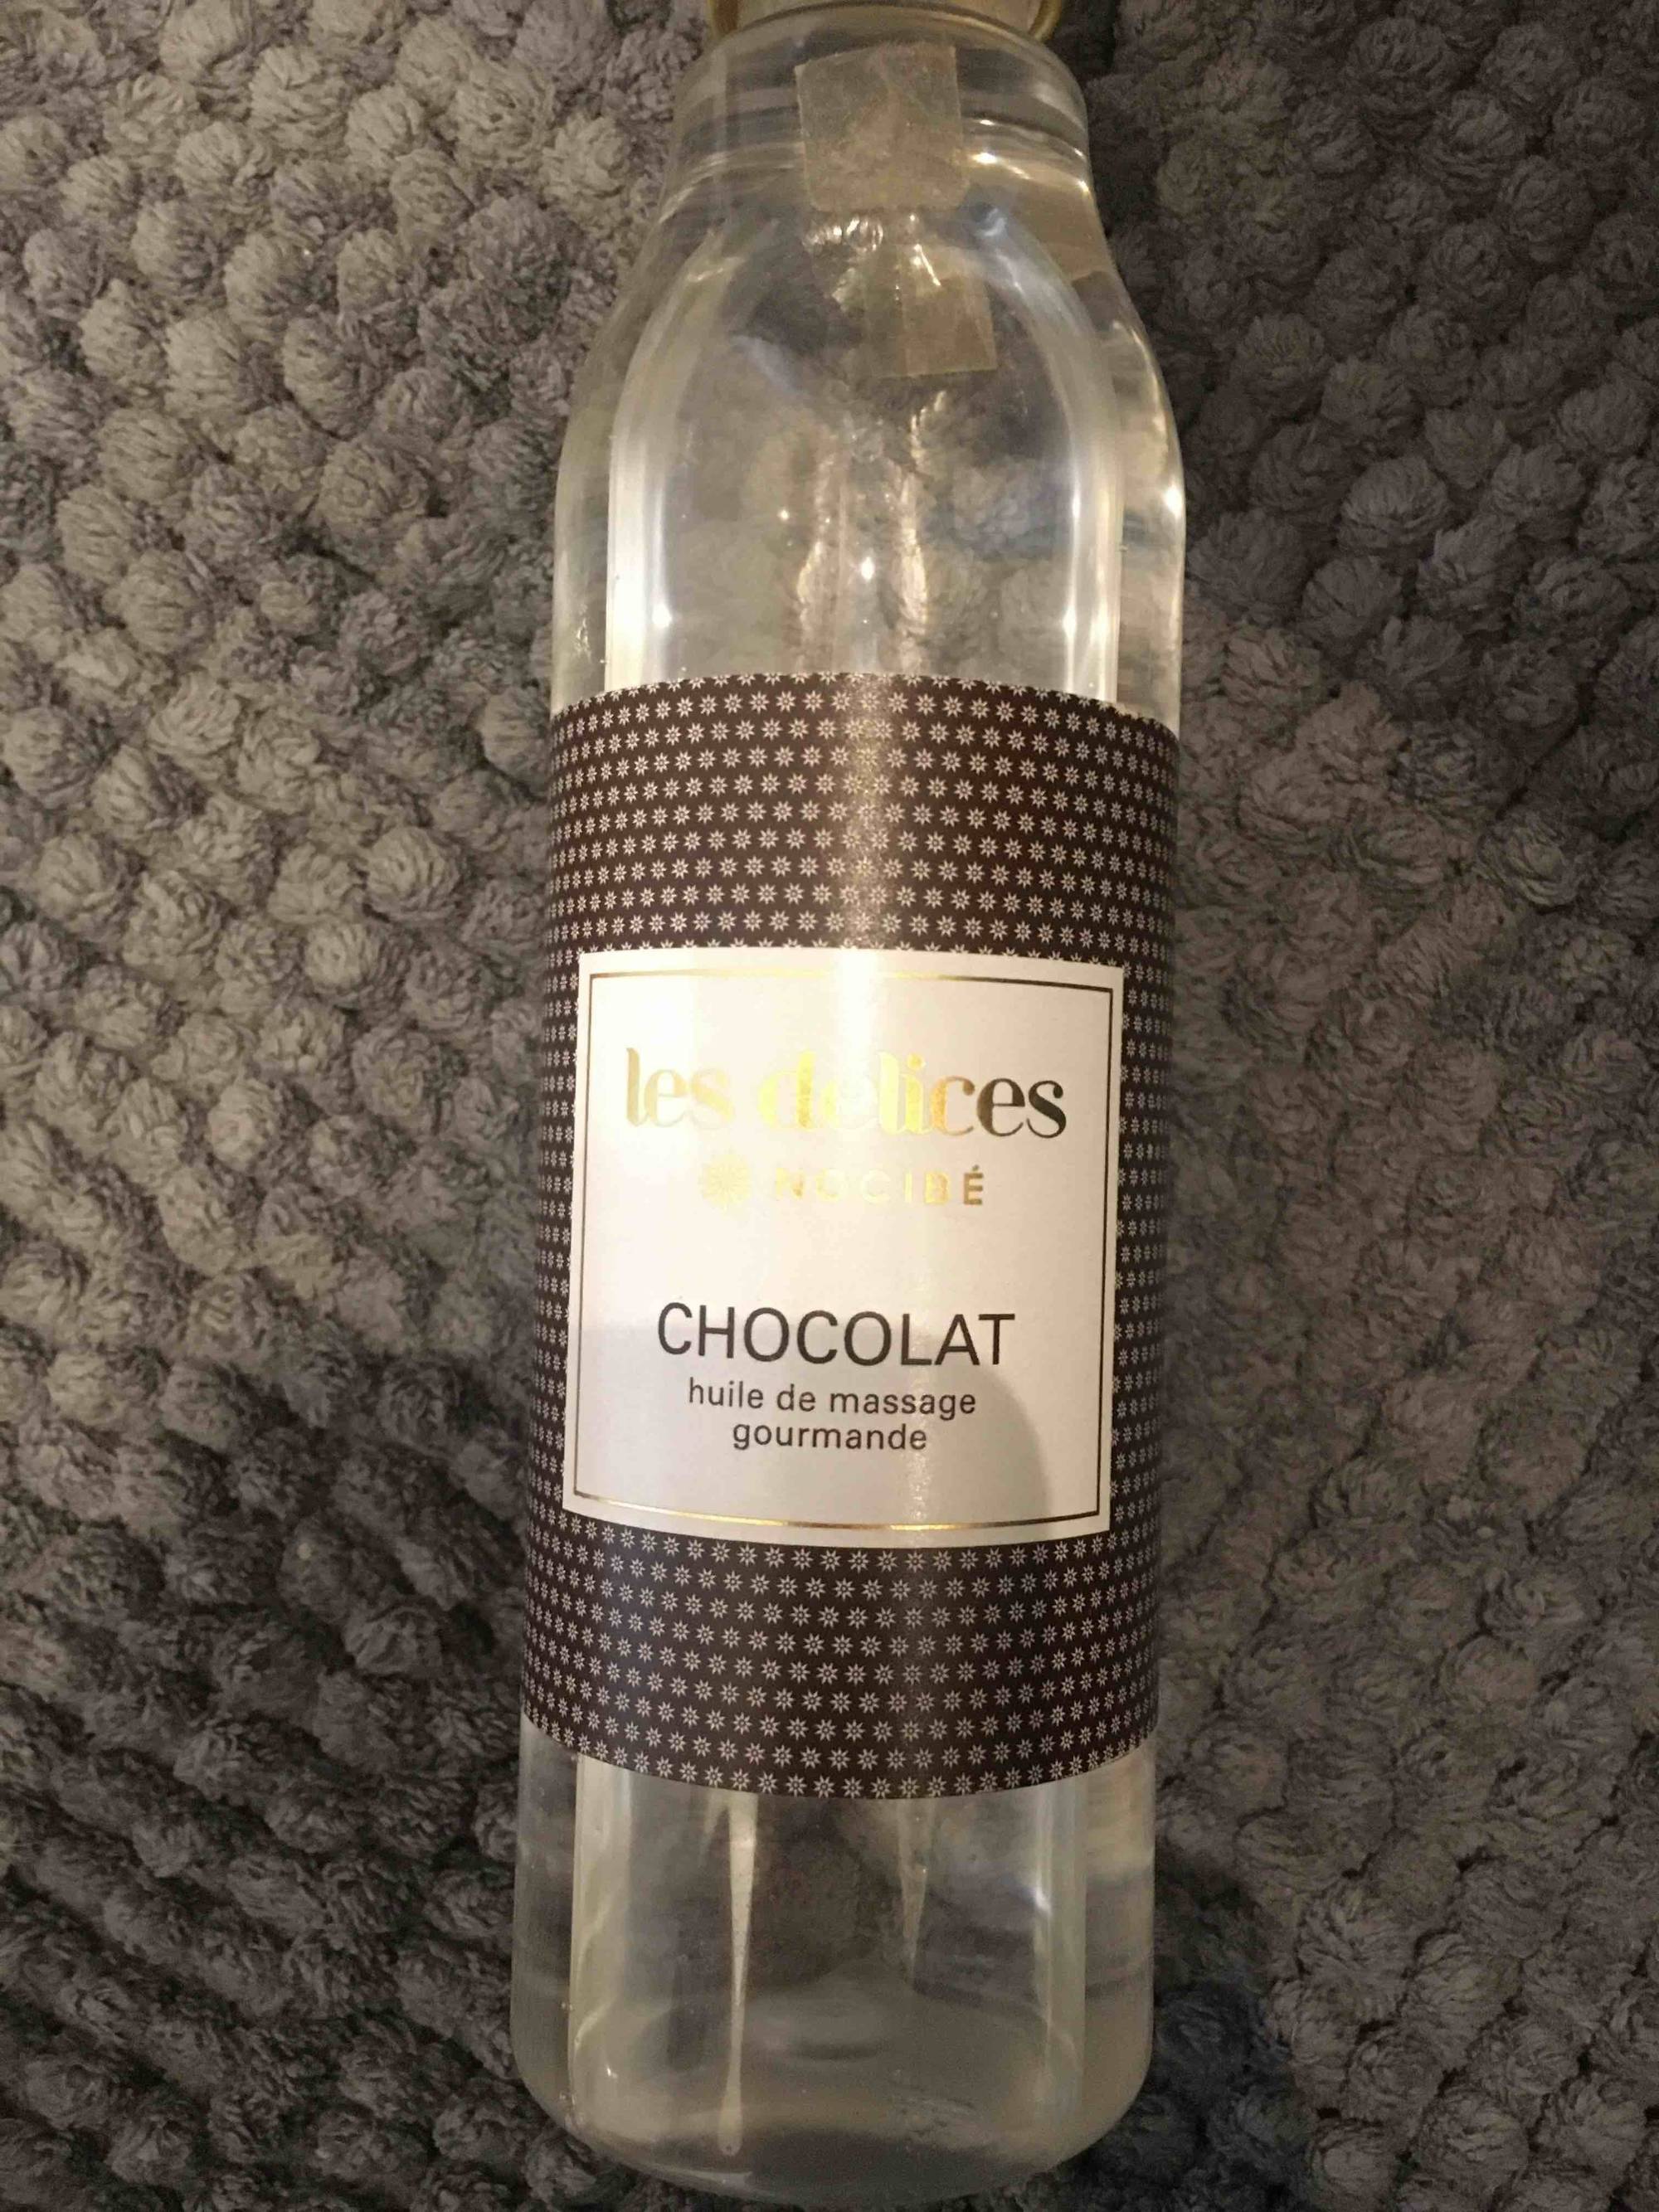 NOCIBÉ - Les délices chocolat - Huile de massage gourmande